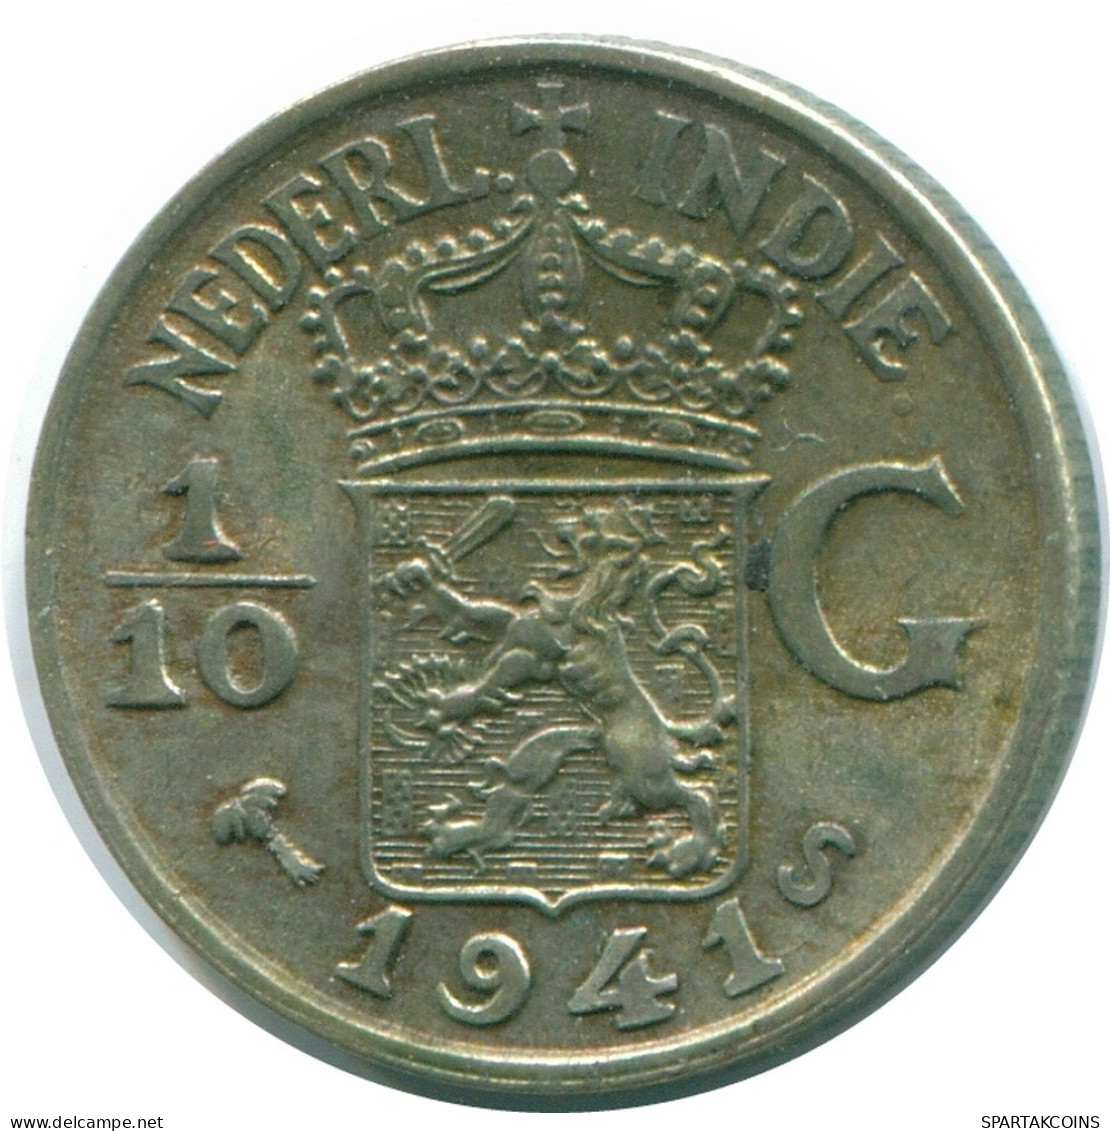 1/10 GULDEN 1941 S NIEDERLANDE OSTINDIEN SILBER Koloniale Münze #NL13821.3.D.A - Niederländisch-Indien